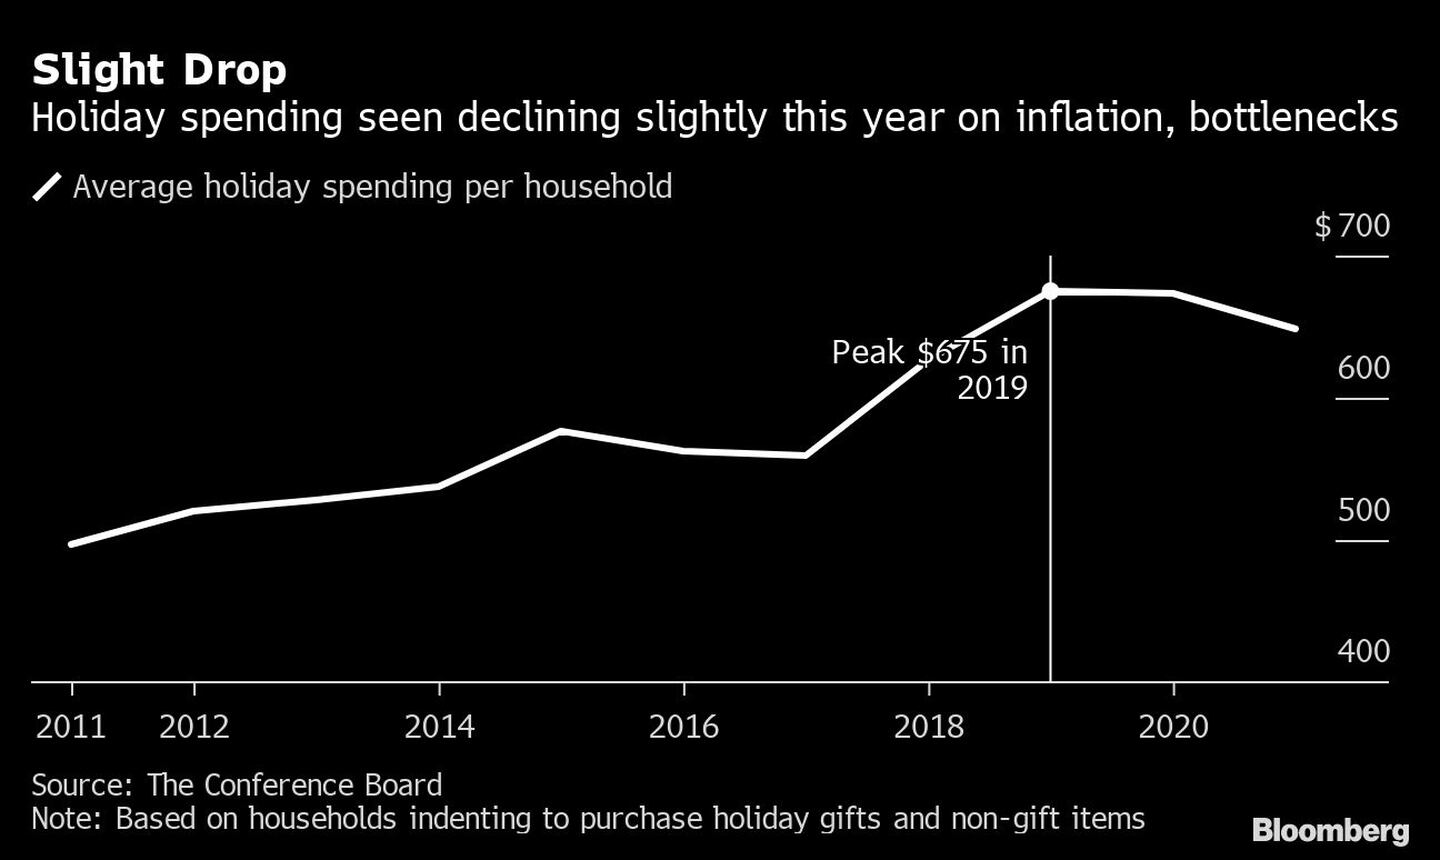 Ligera caída
El gasto en vacaciones disminuye ligeramente este año debido a la inflación y a los atascos
Blanco: gasto medio en vacaciones por hogardfd